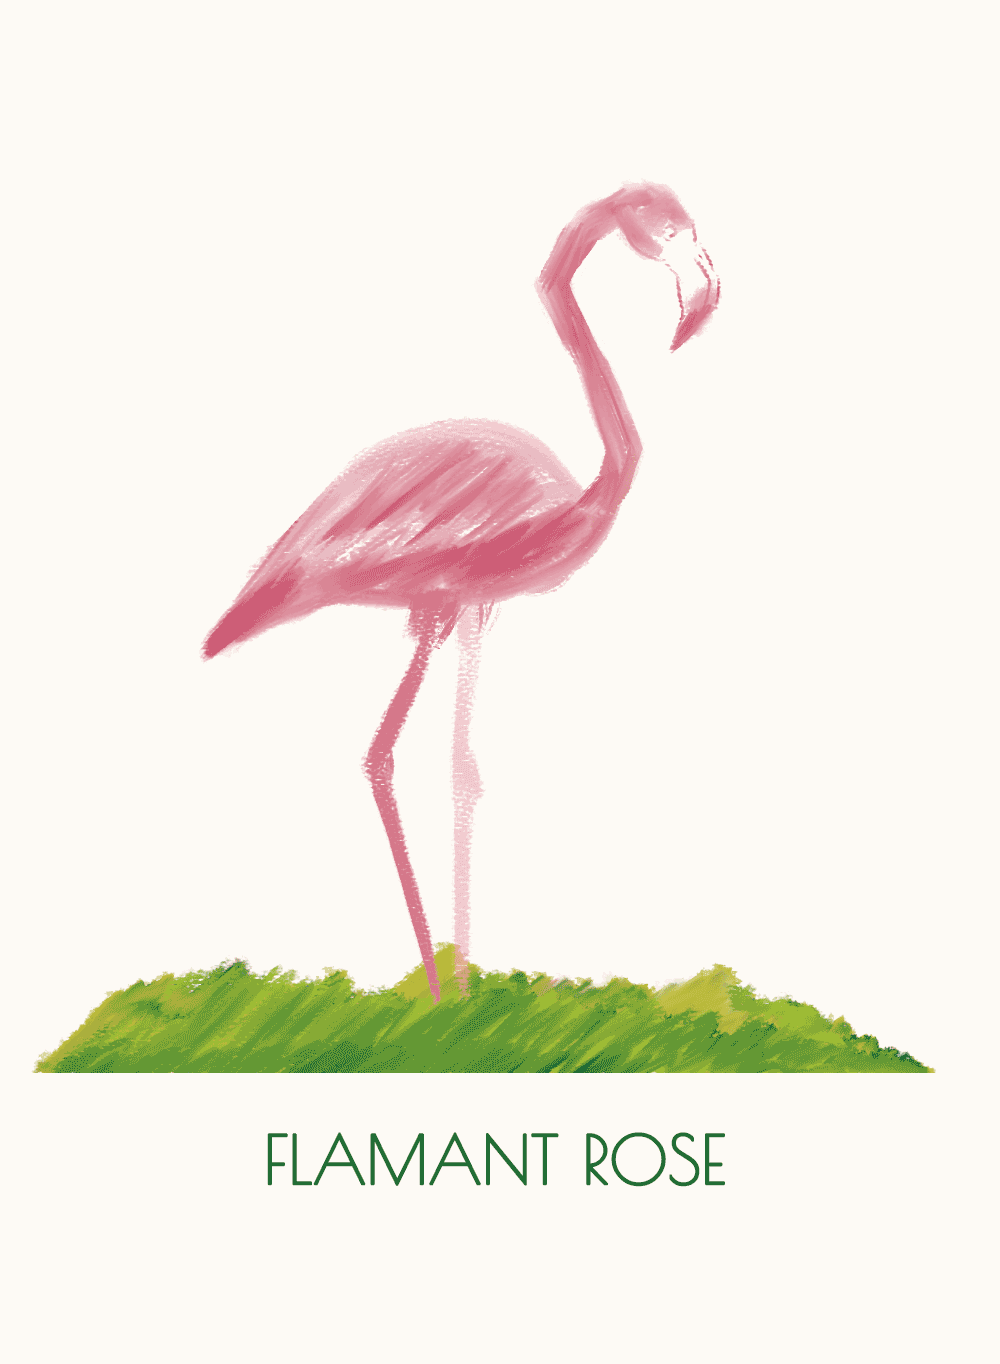 Illustration peinture digitale dessin animalier flamant rose